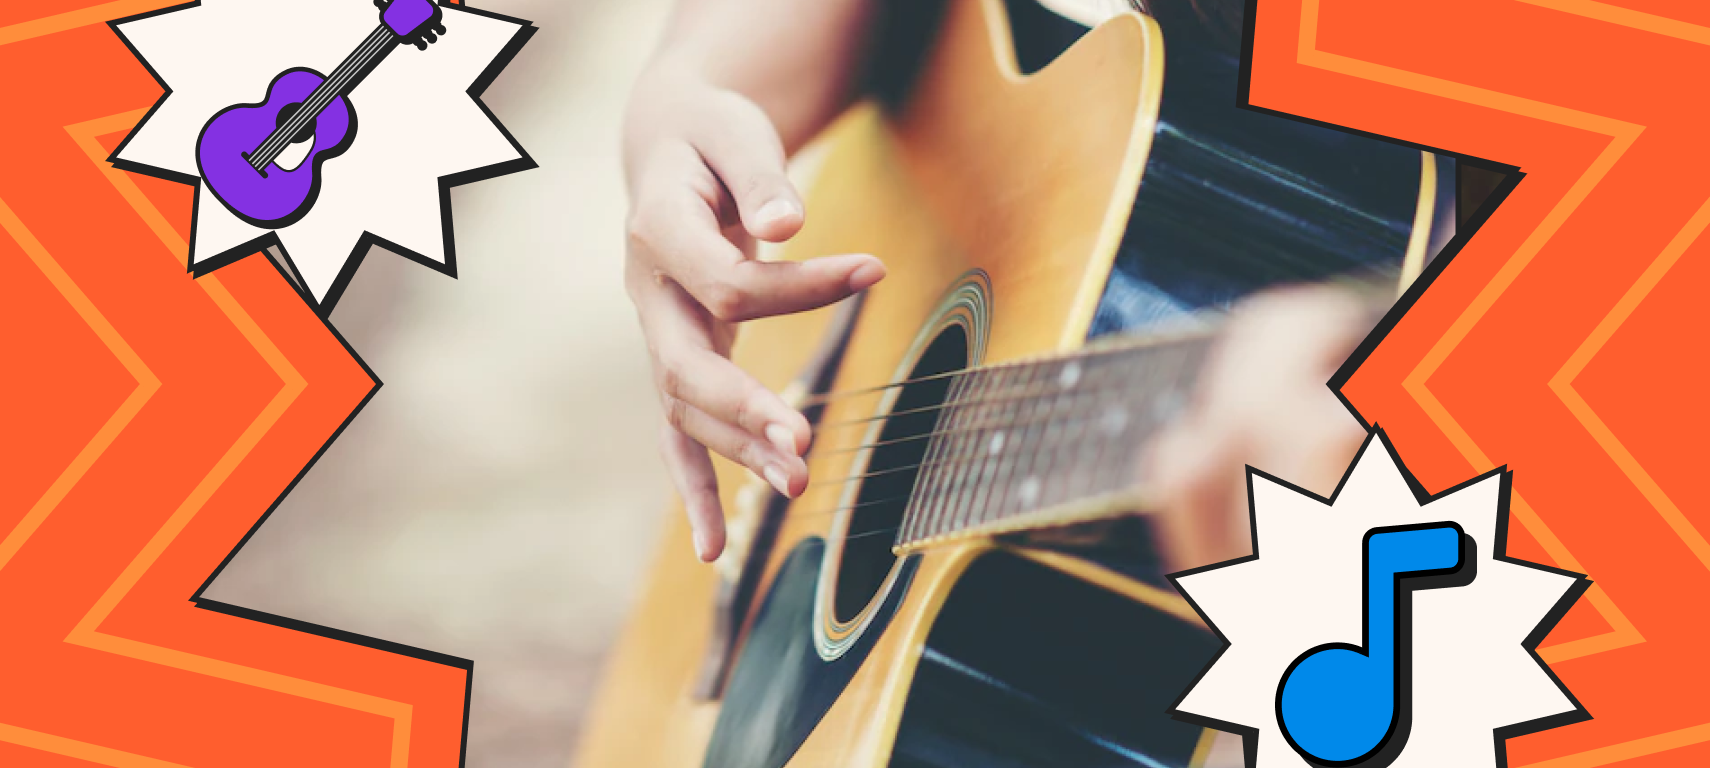 Tudo o que você precisa saber sobre batida de violão | Blog do Cifra Club